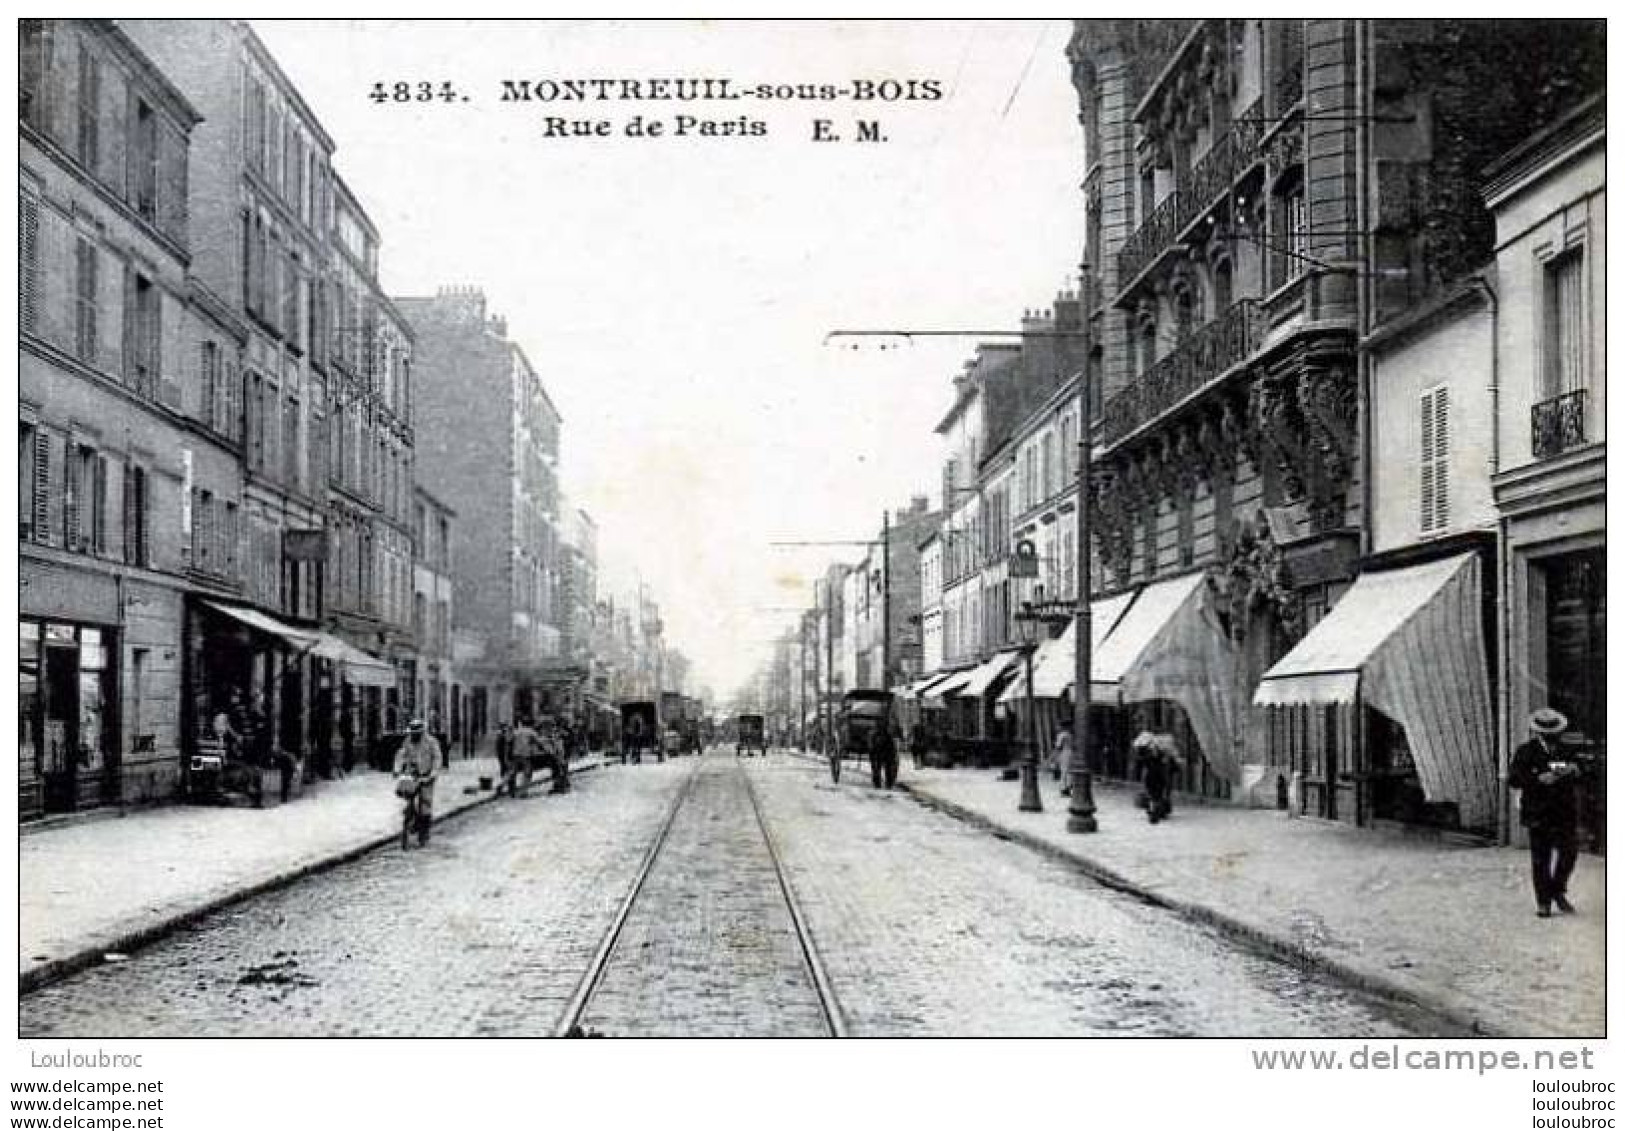 93 MONTREUIL SOUS BOIS RUE DE PARIS E.M. N°4834 - Montreuil